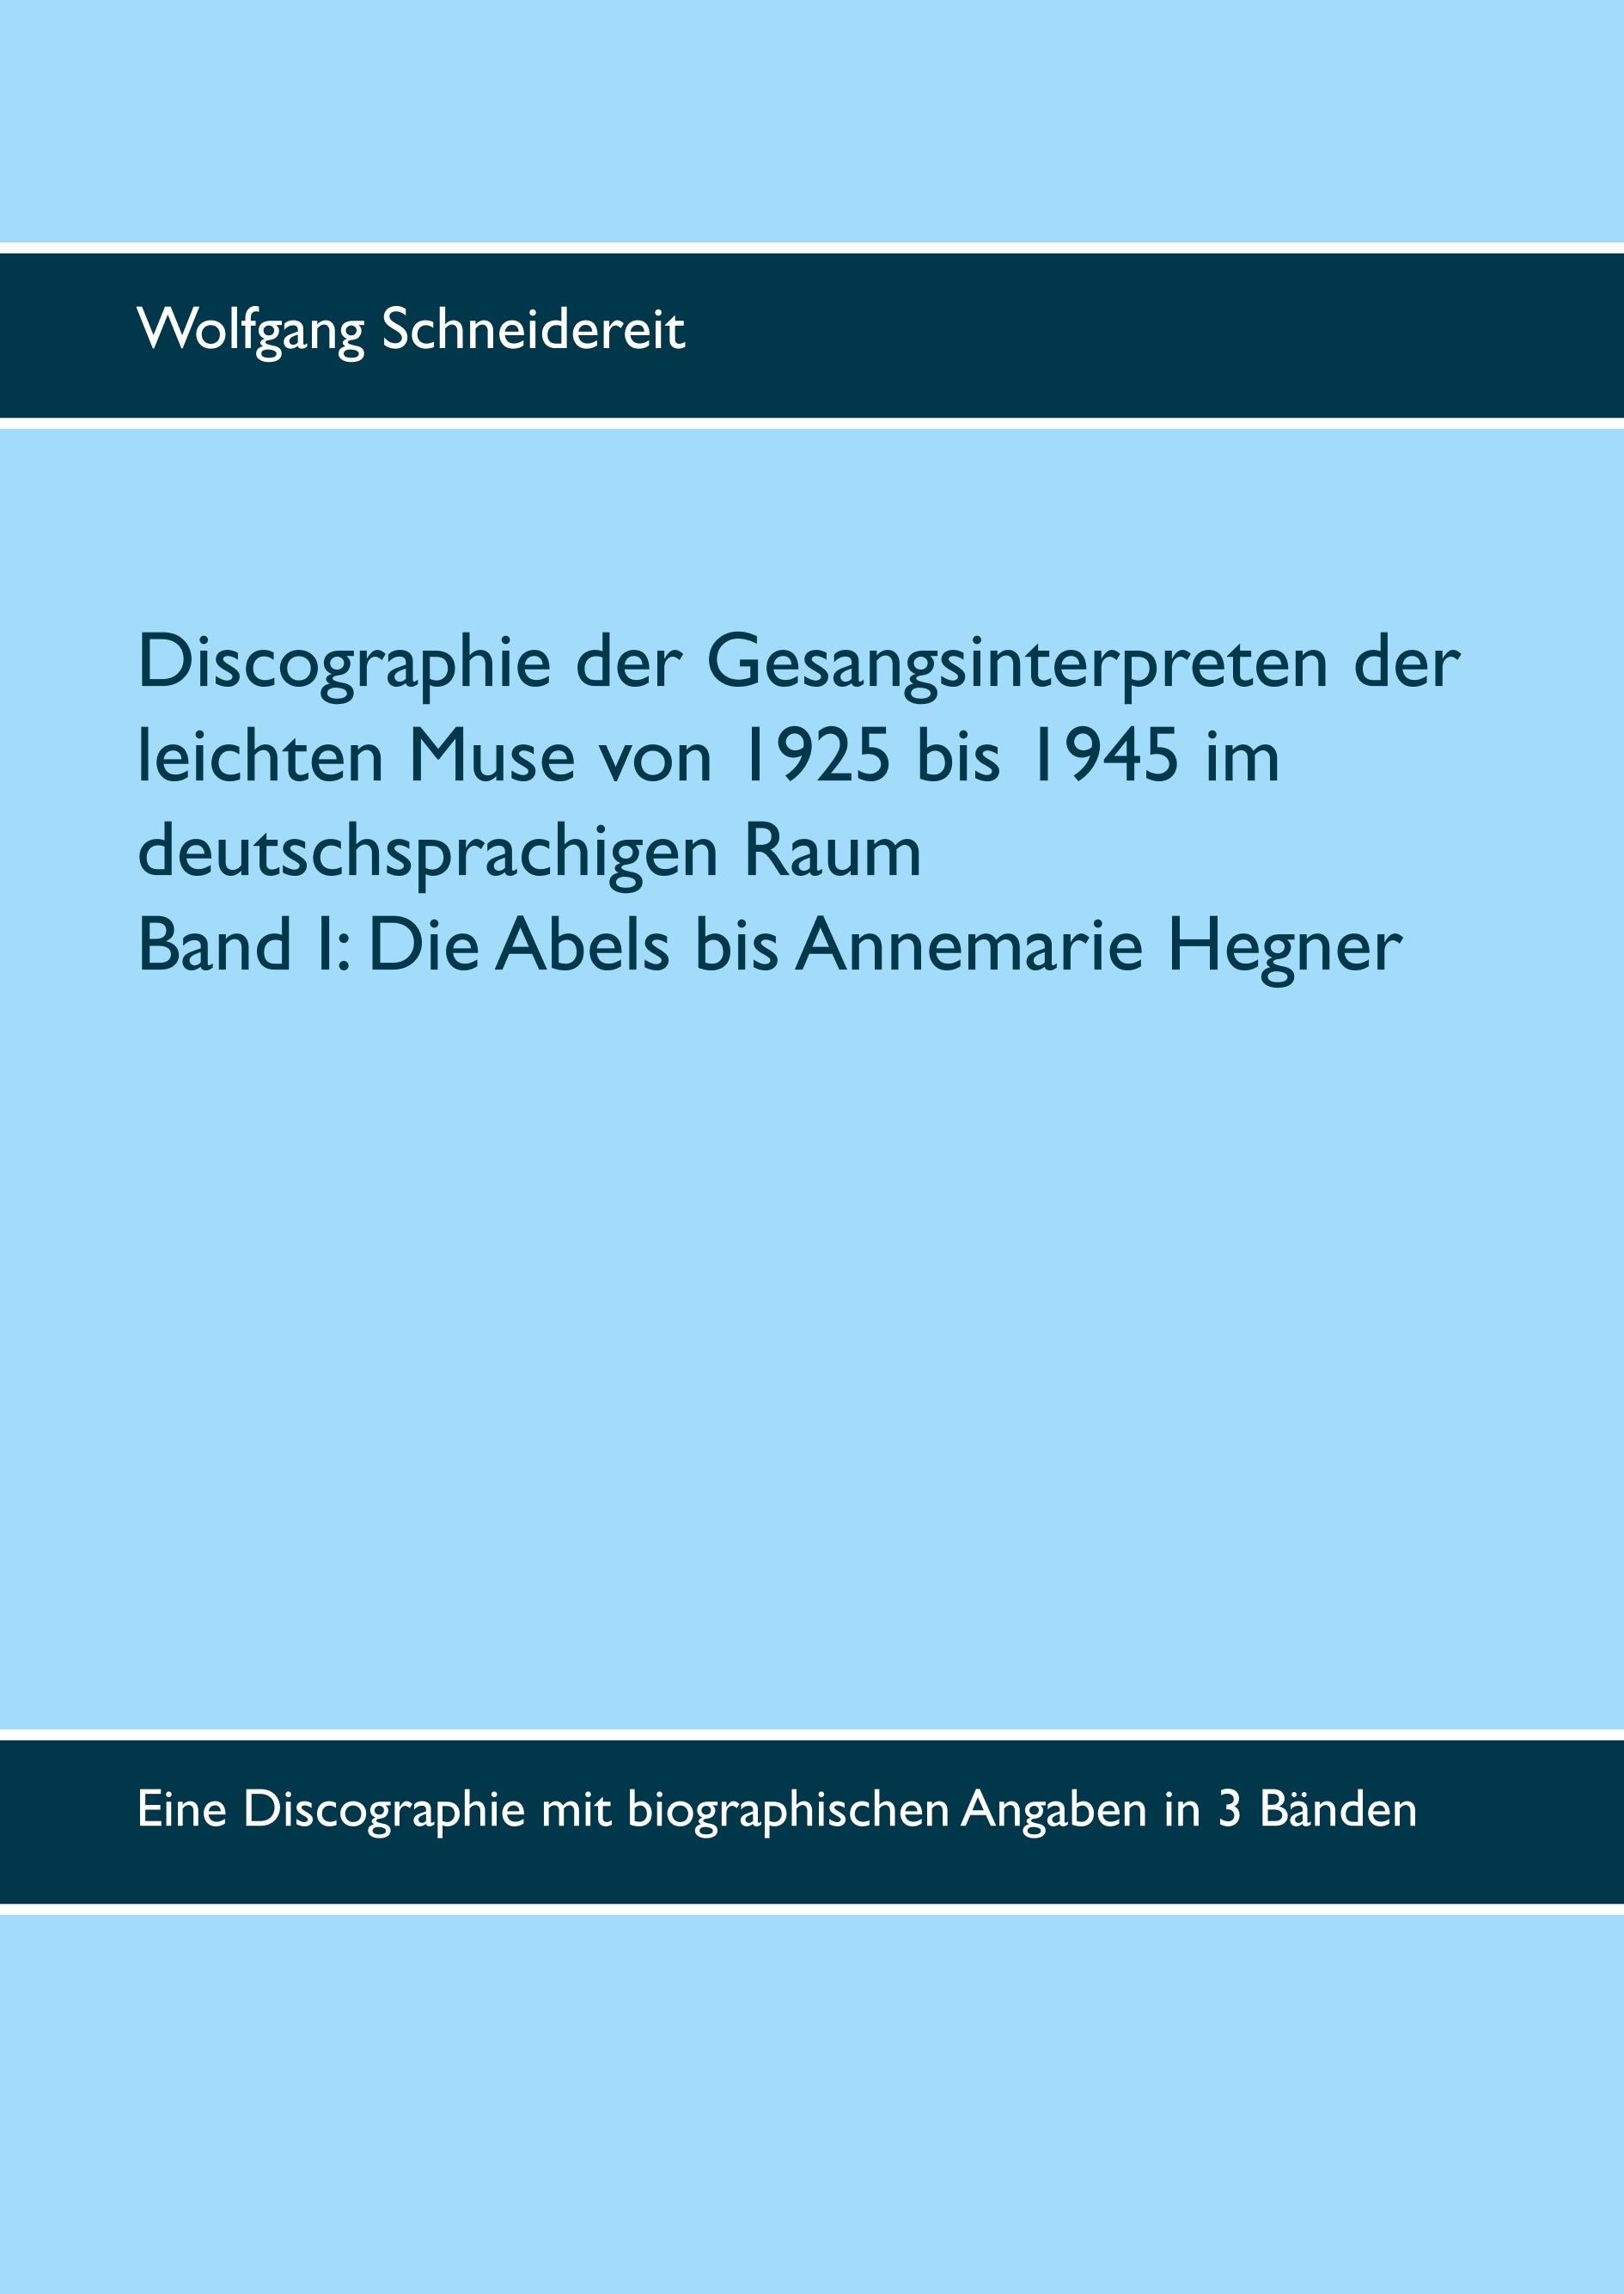 Discographie der Gesangsinterpreten der leichten Muse von 1925 bis 1945 im deutschsprachigen Raum - Schneidereit, Wolfgang